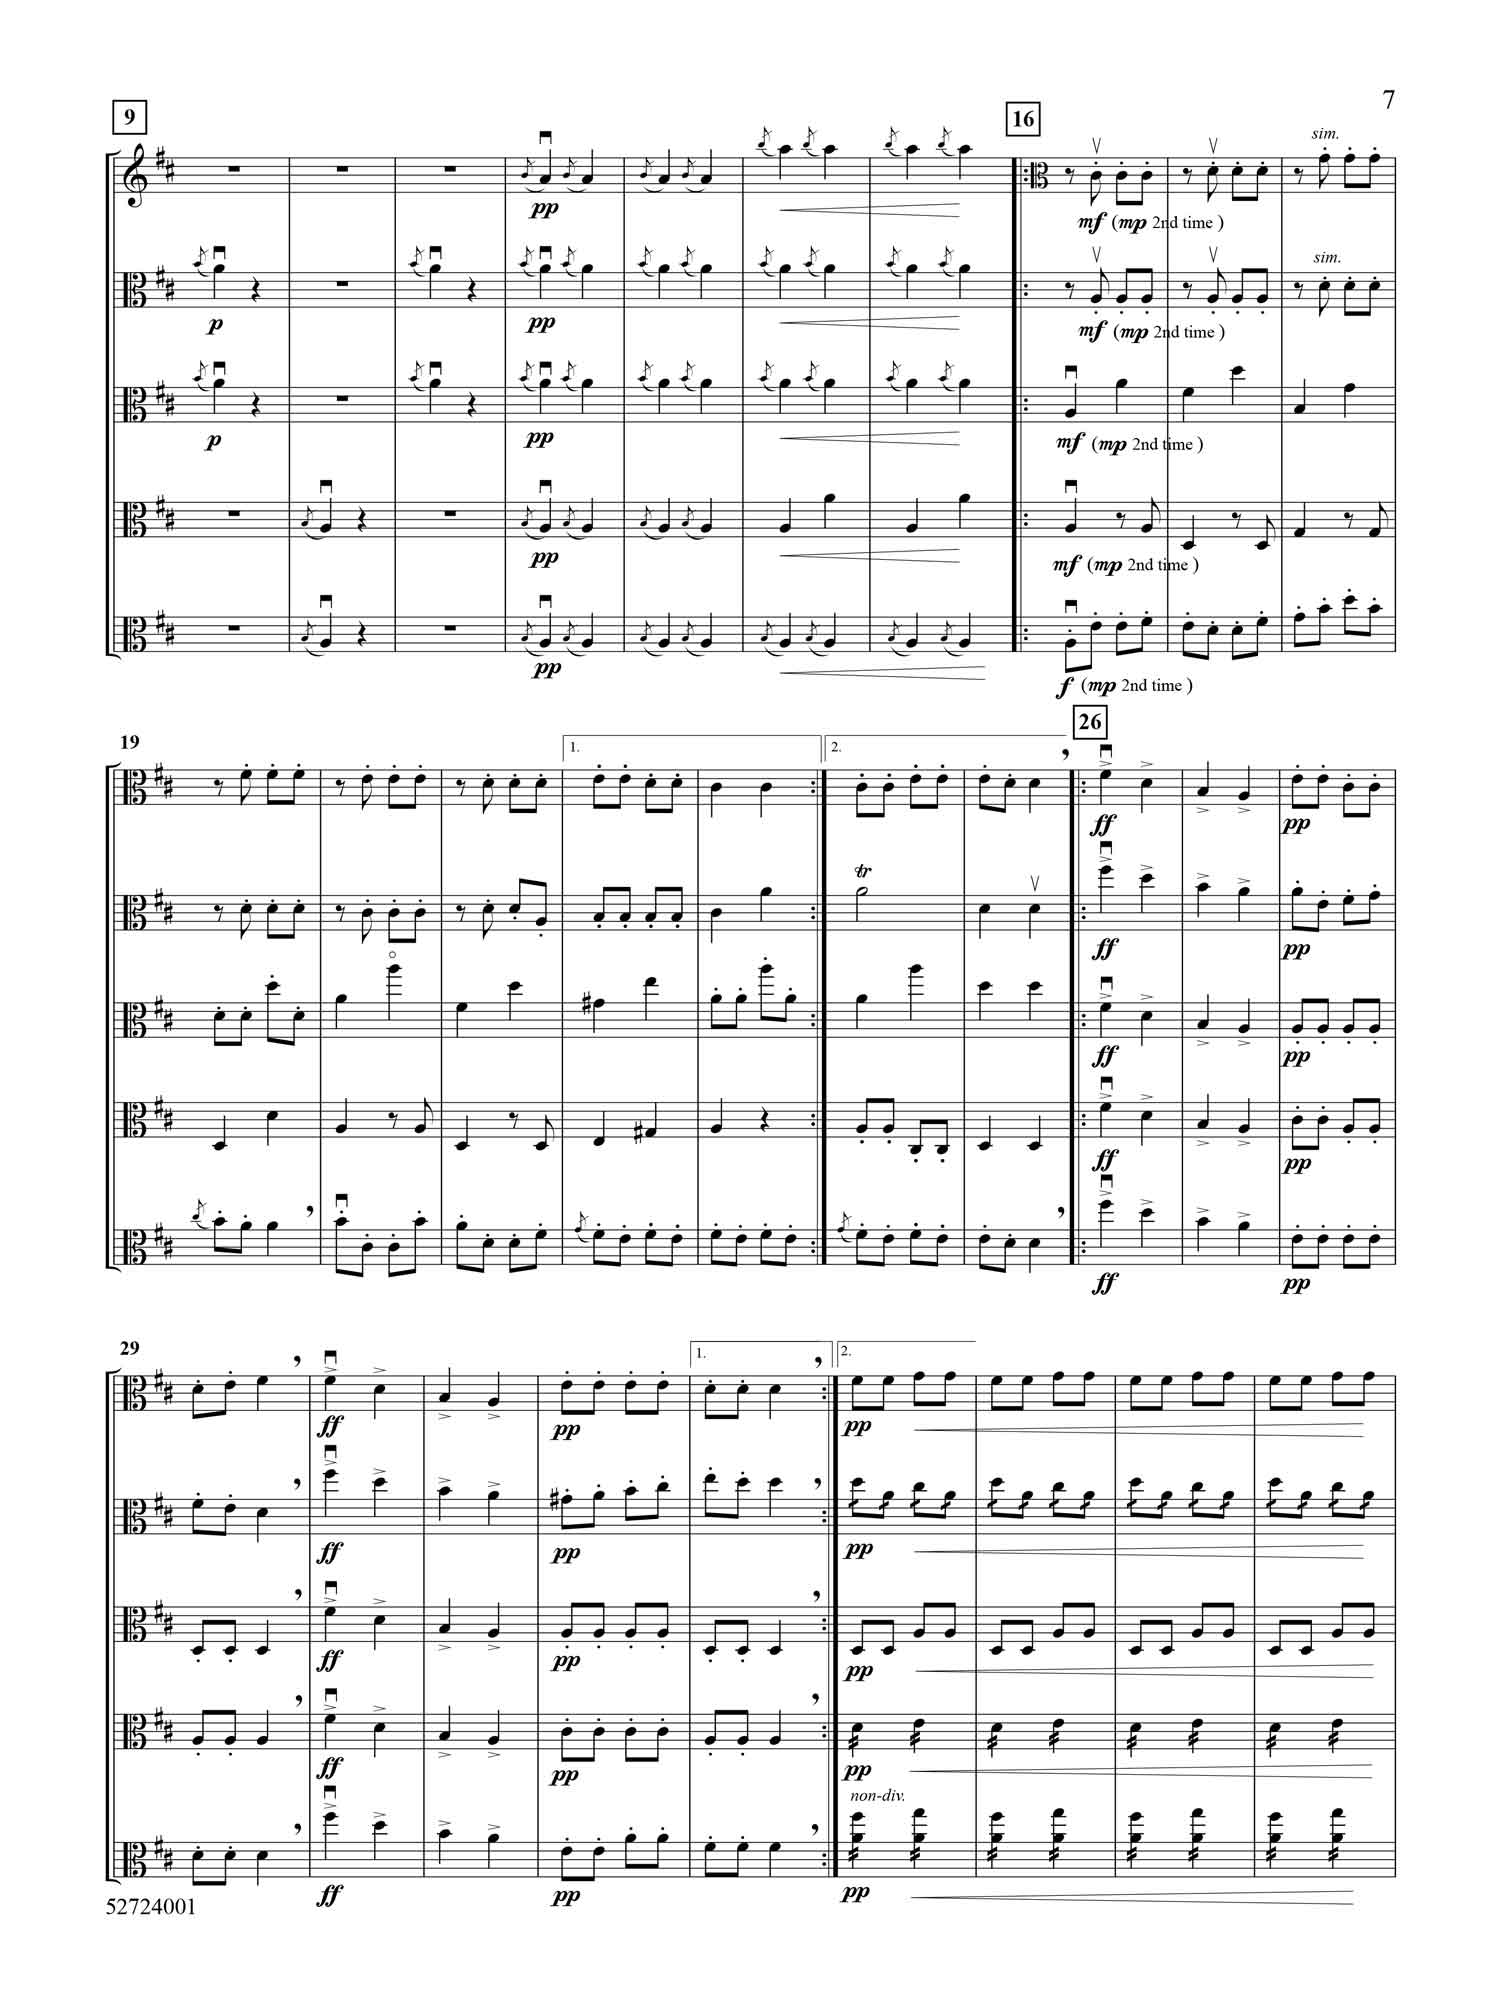 rondeau-des-metamorphoses-cancan-viola-quintet-score3.jpg